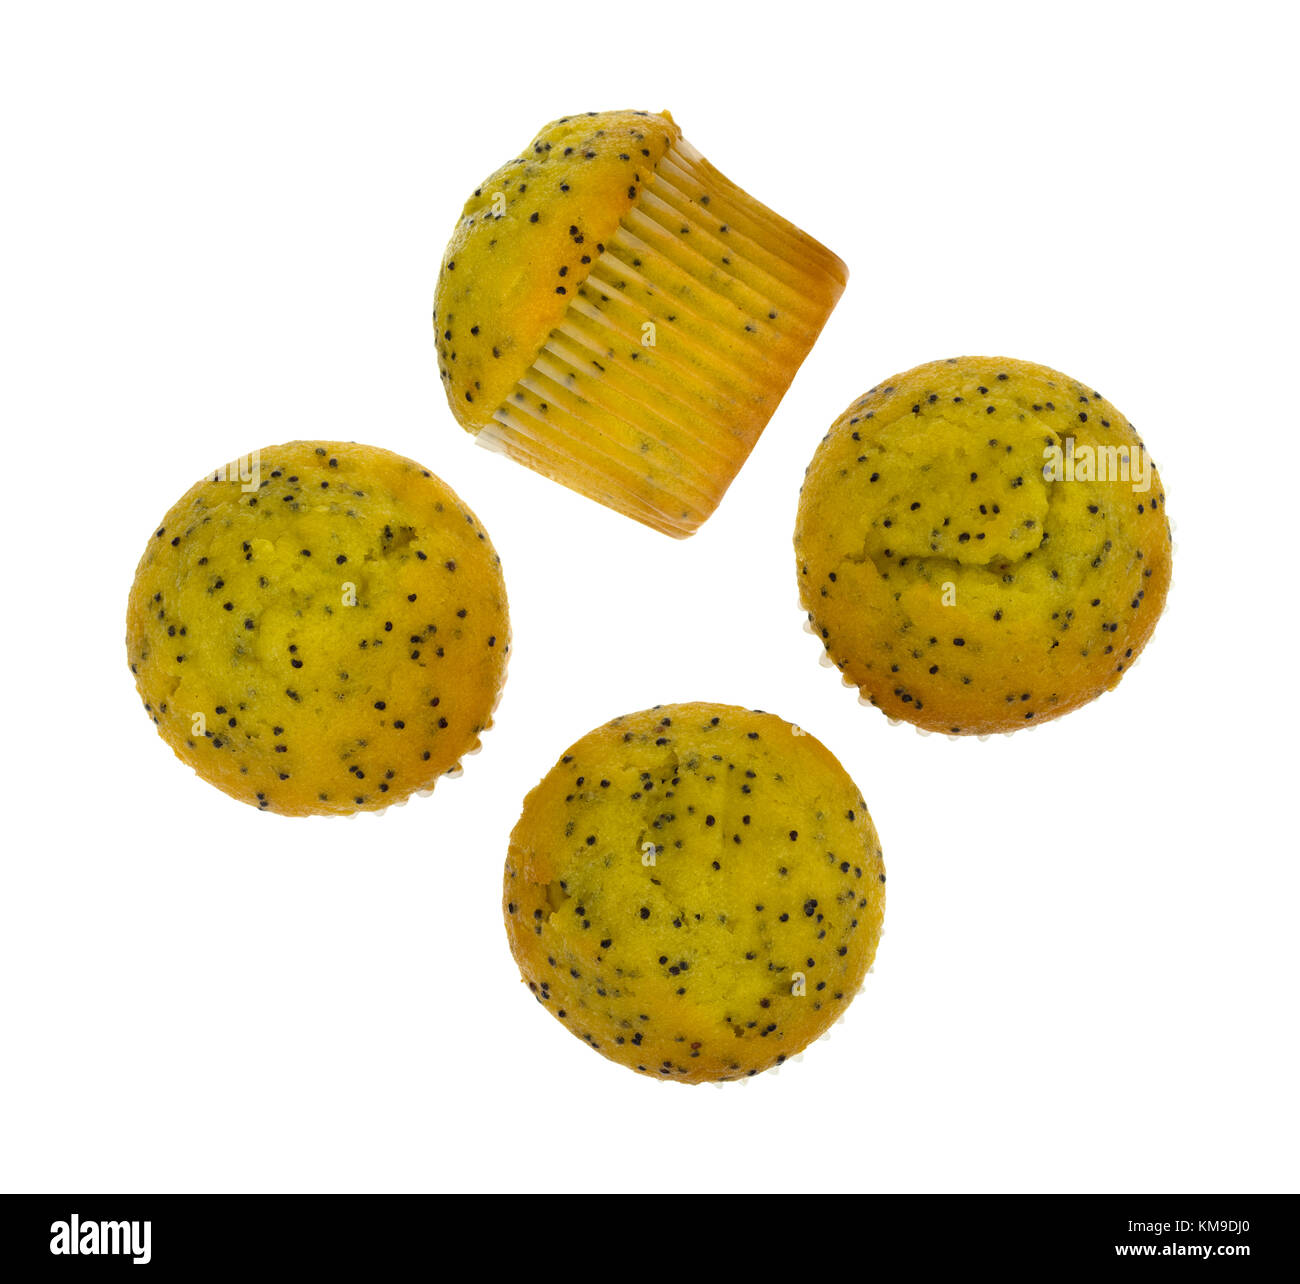 Vista superiore di diverse dimensioni del morso di limone semi di papavero muffin con uno sul suo lato isolato su uno sfondo bianco. Foto Stock